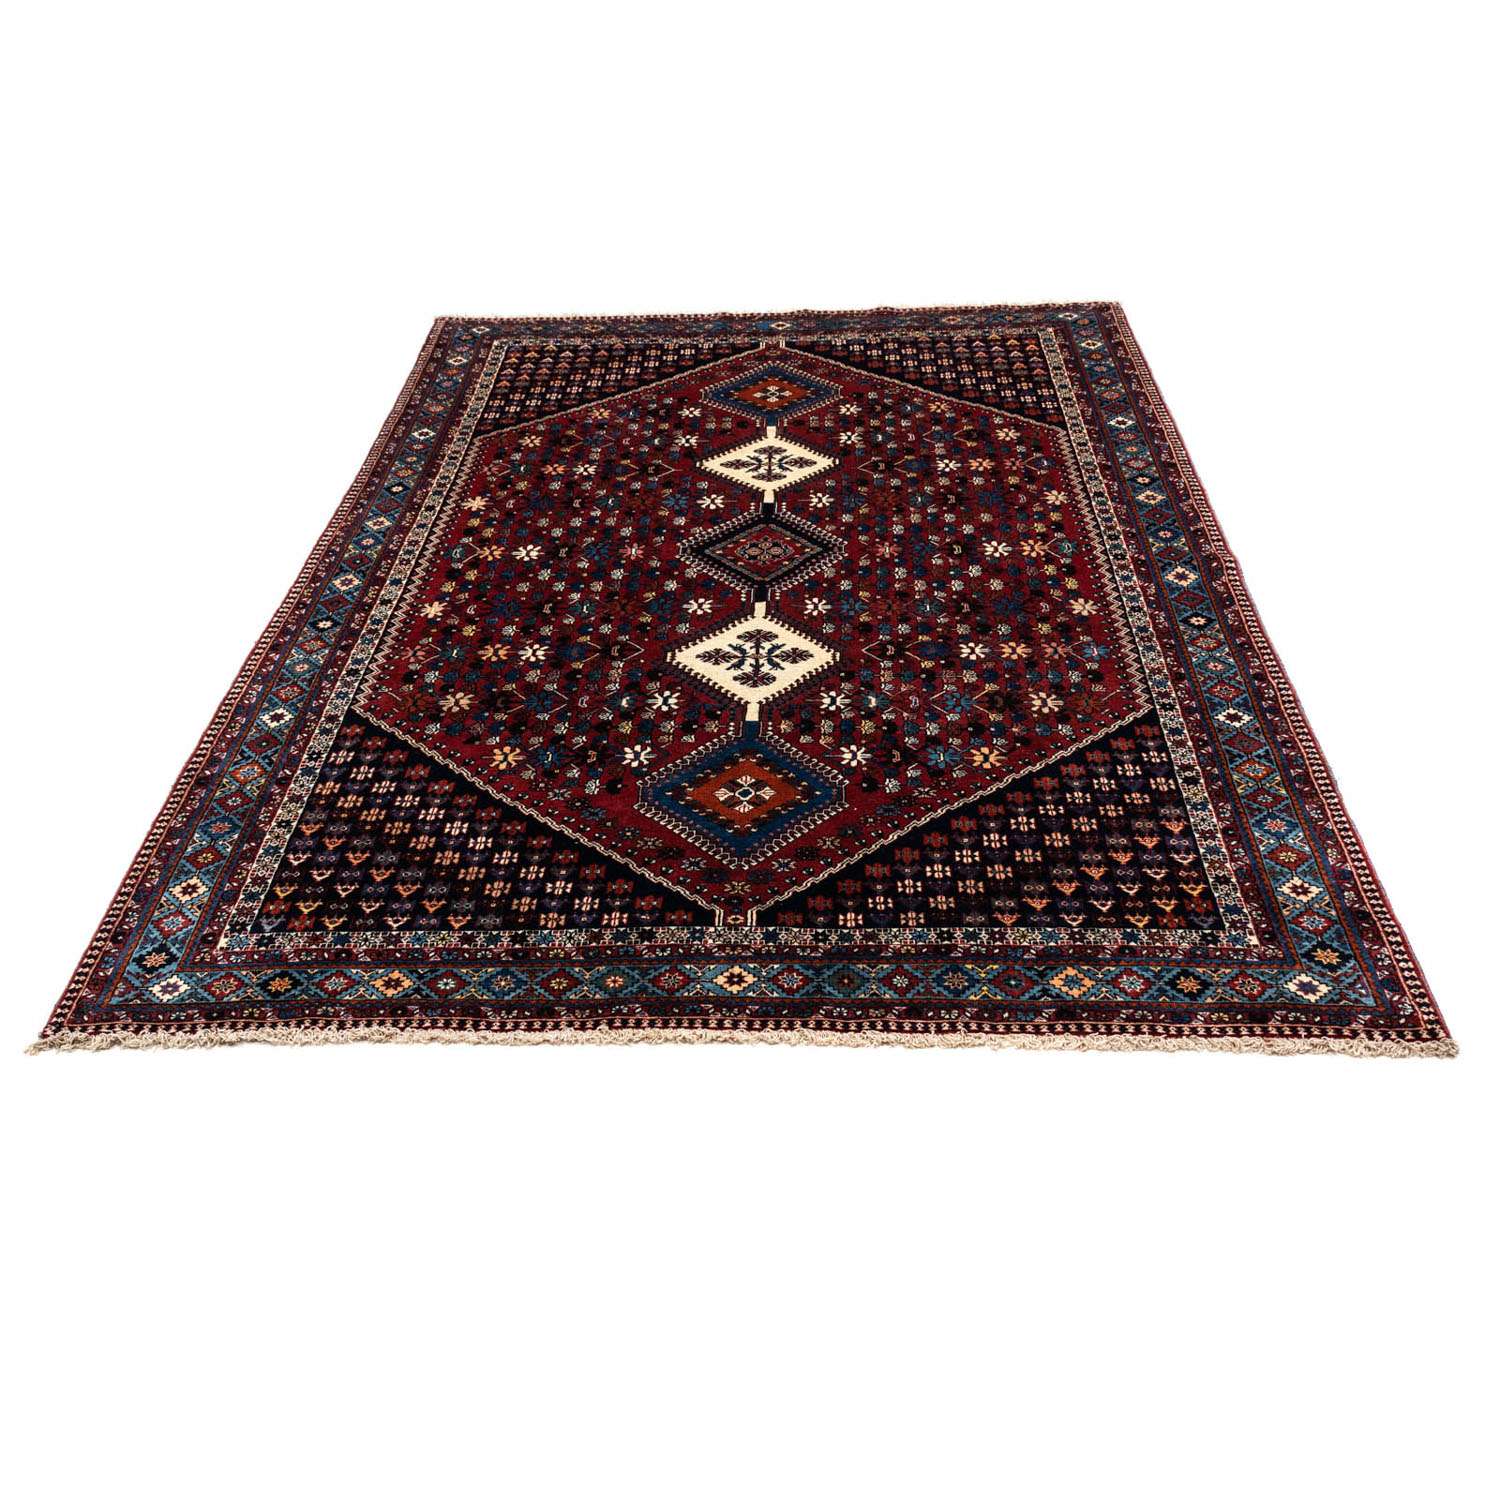 Persisk teppe - Nomadisk - 320 x 205 cm - mørk rød